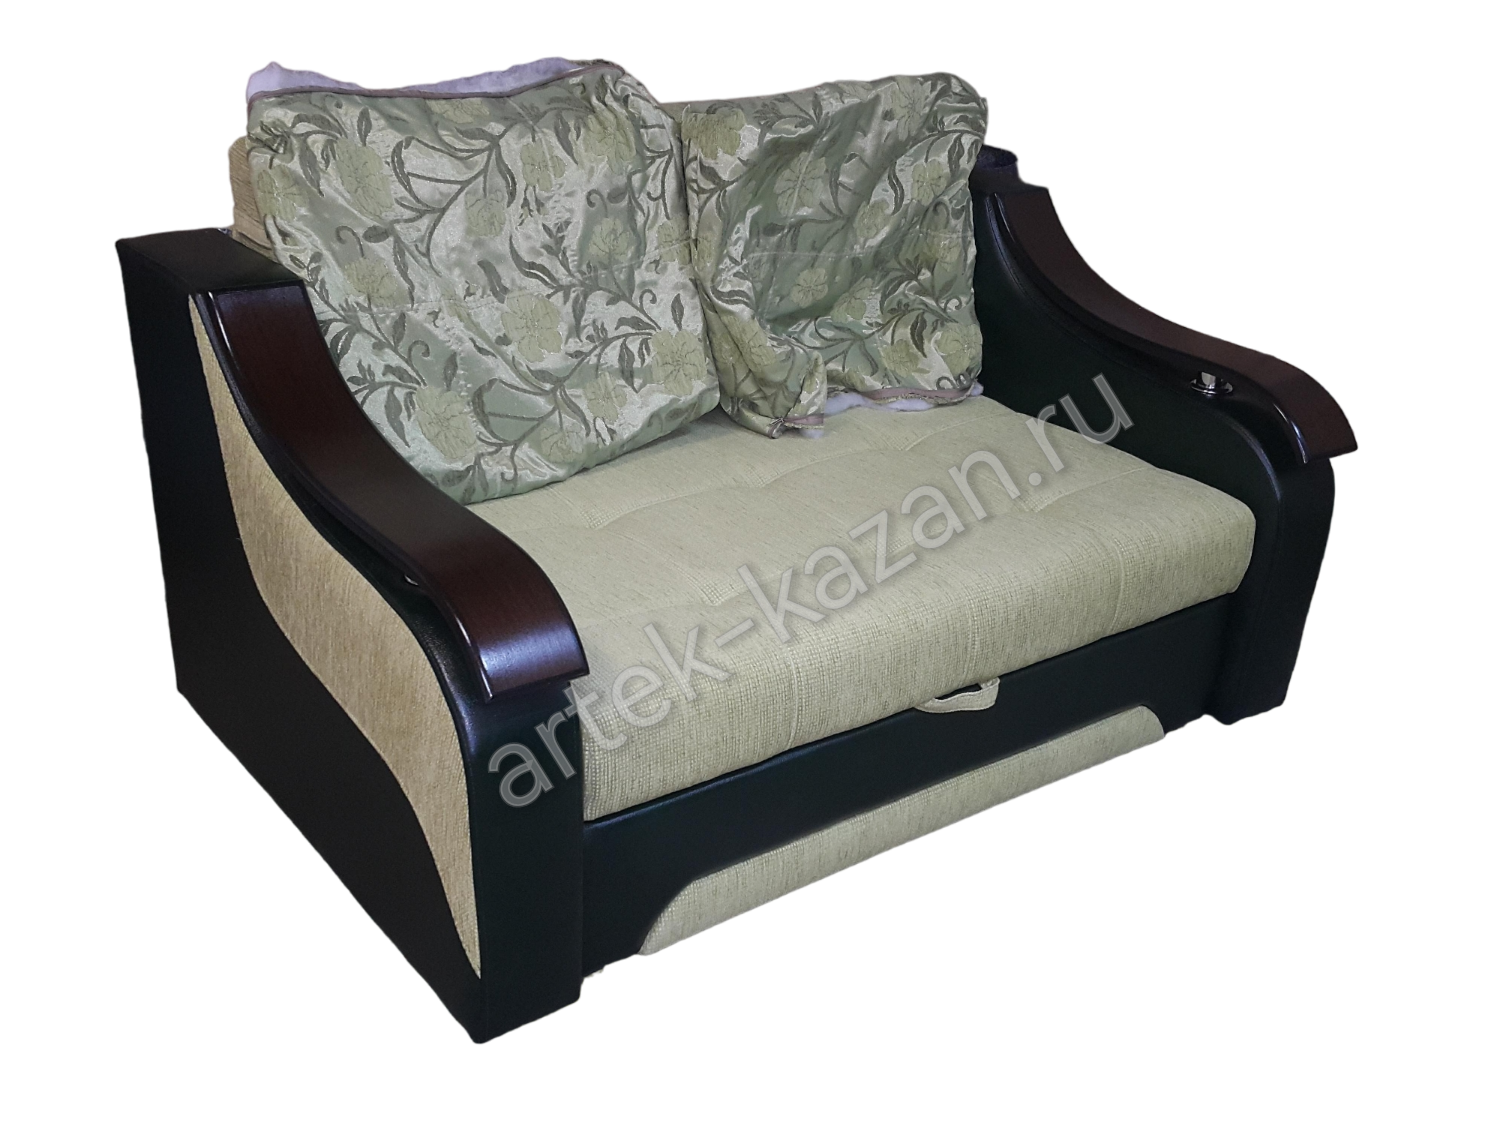 Мини диван на выкатном механизме Миник фото № 39. Купить недорогой диван по низкой цене от производителя можно у нас.